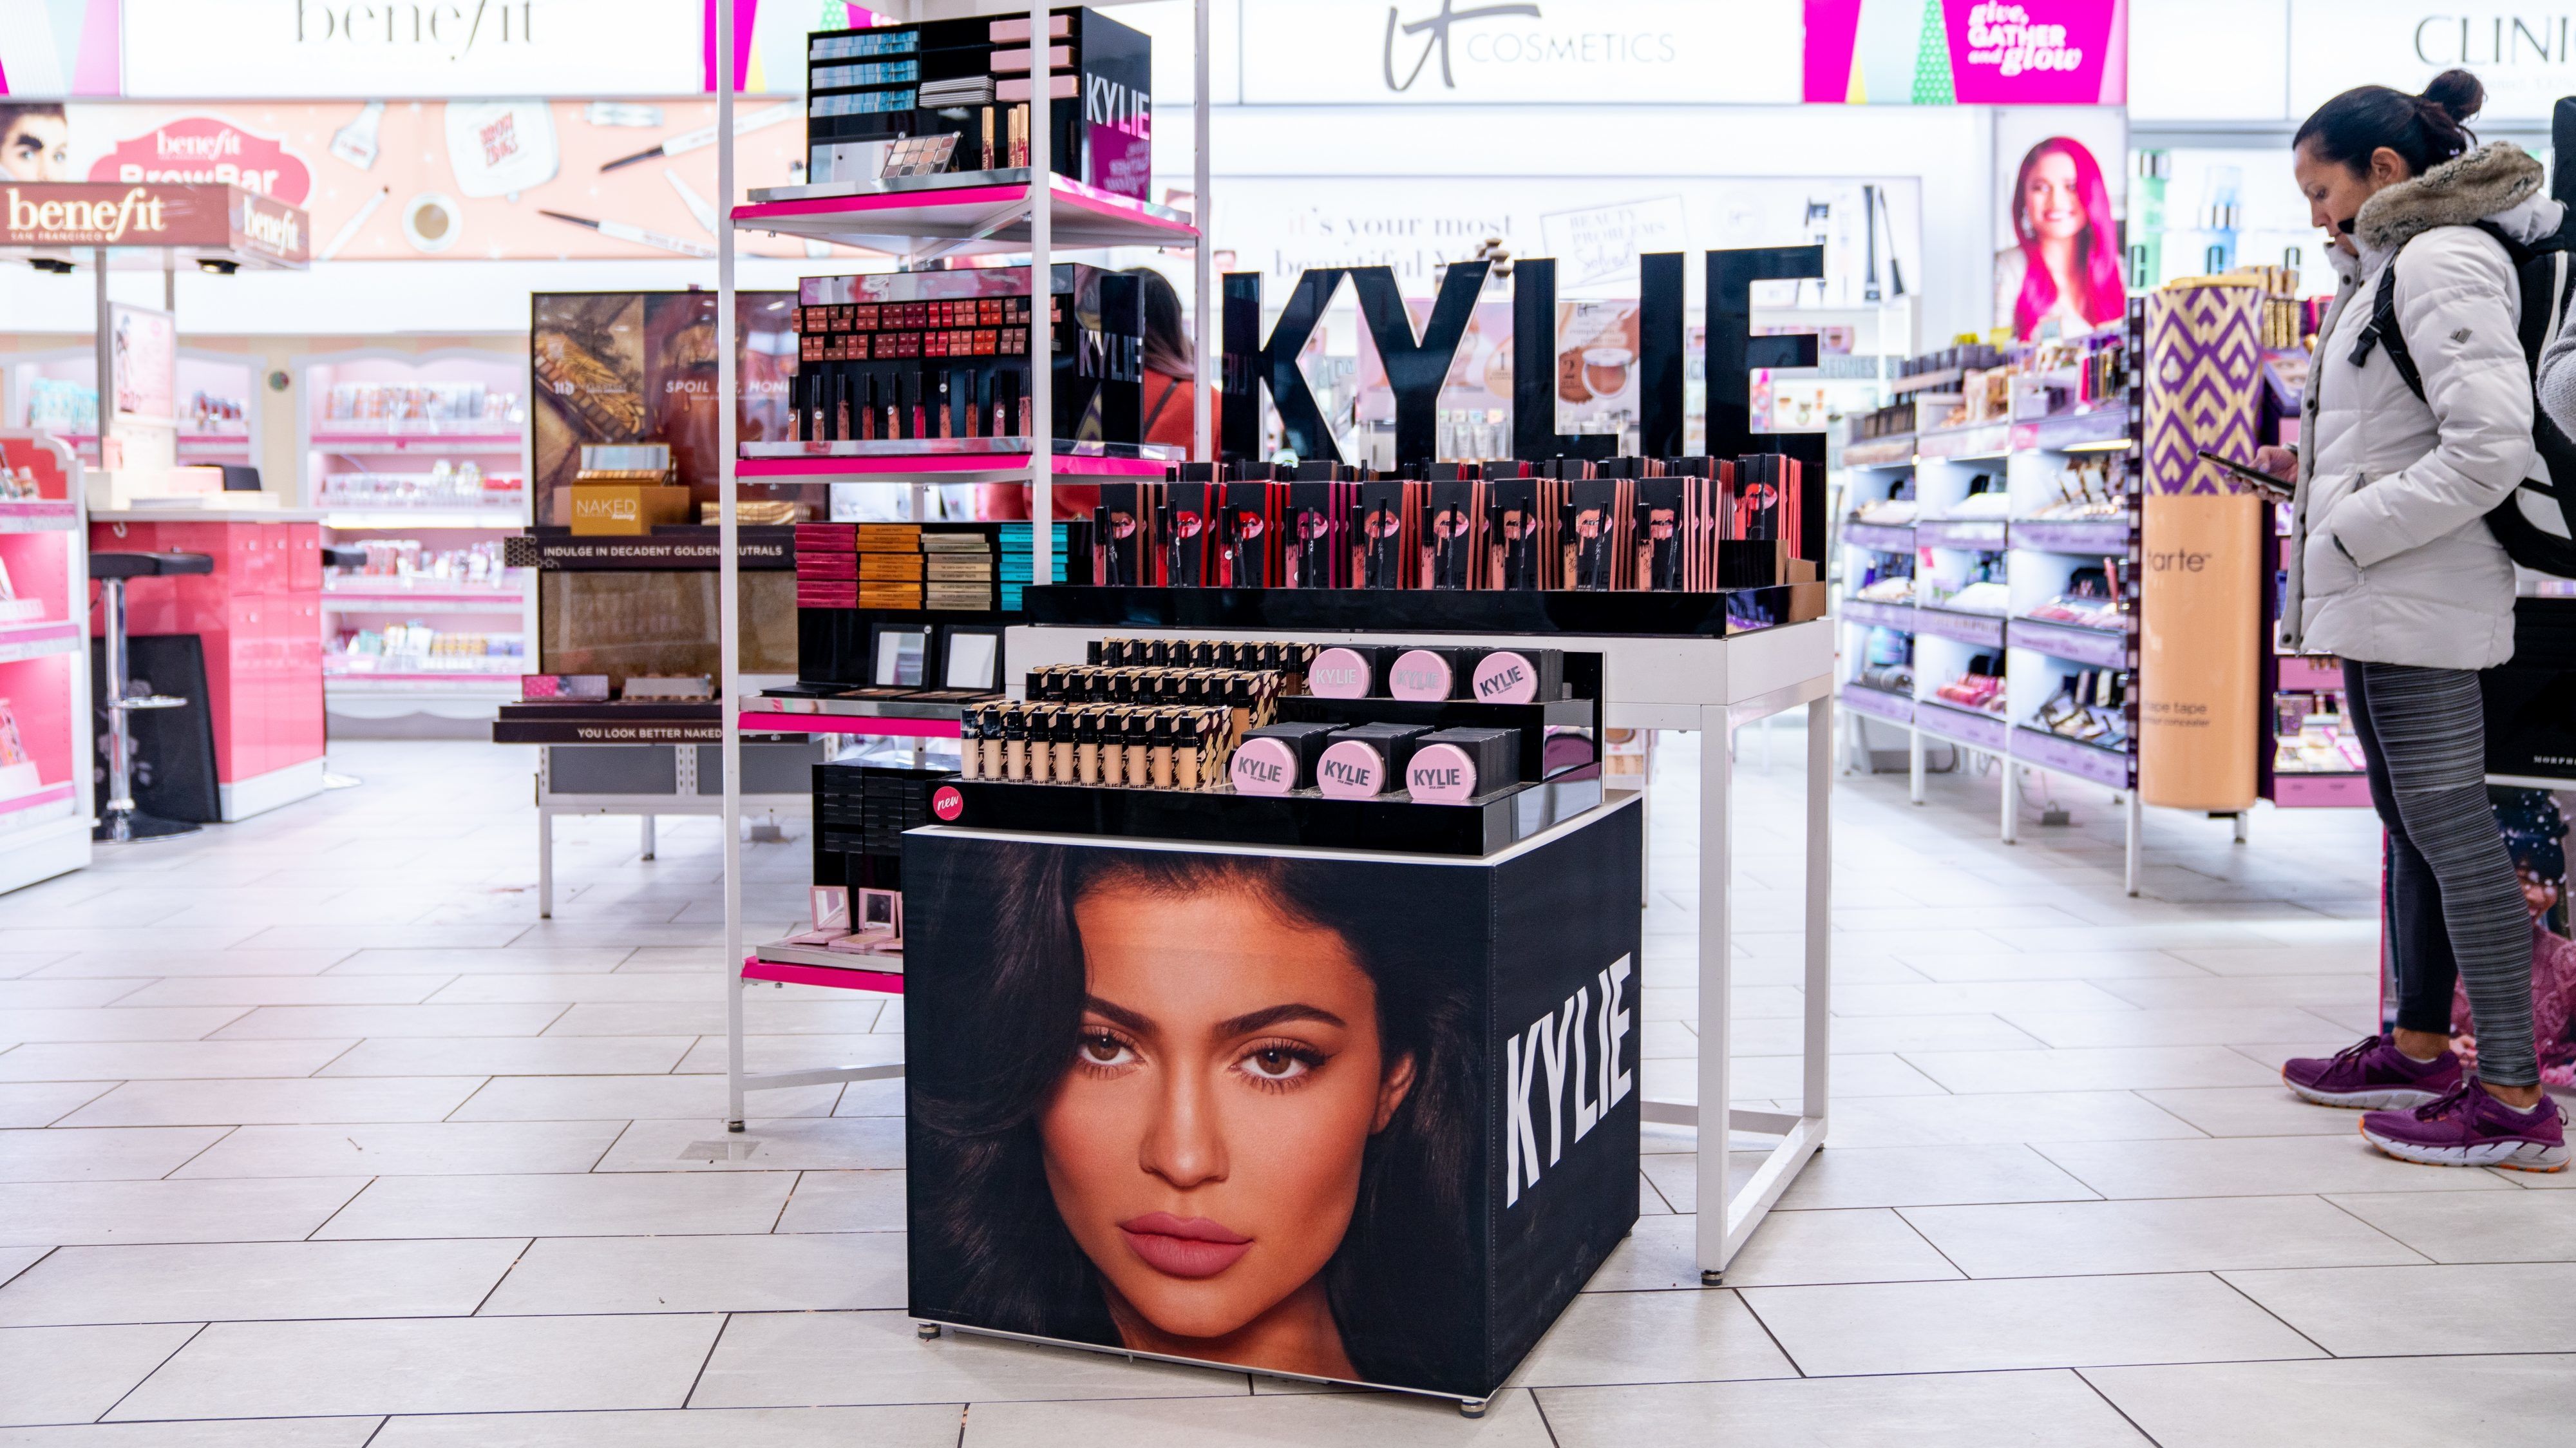 Kylie Jenner kozmetikai cége posztolta, hogy az alkalmazottak milyen bőrszínűek